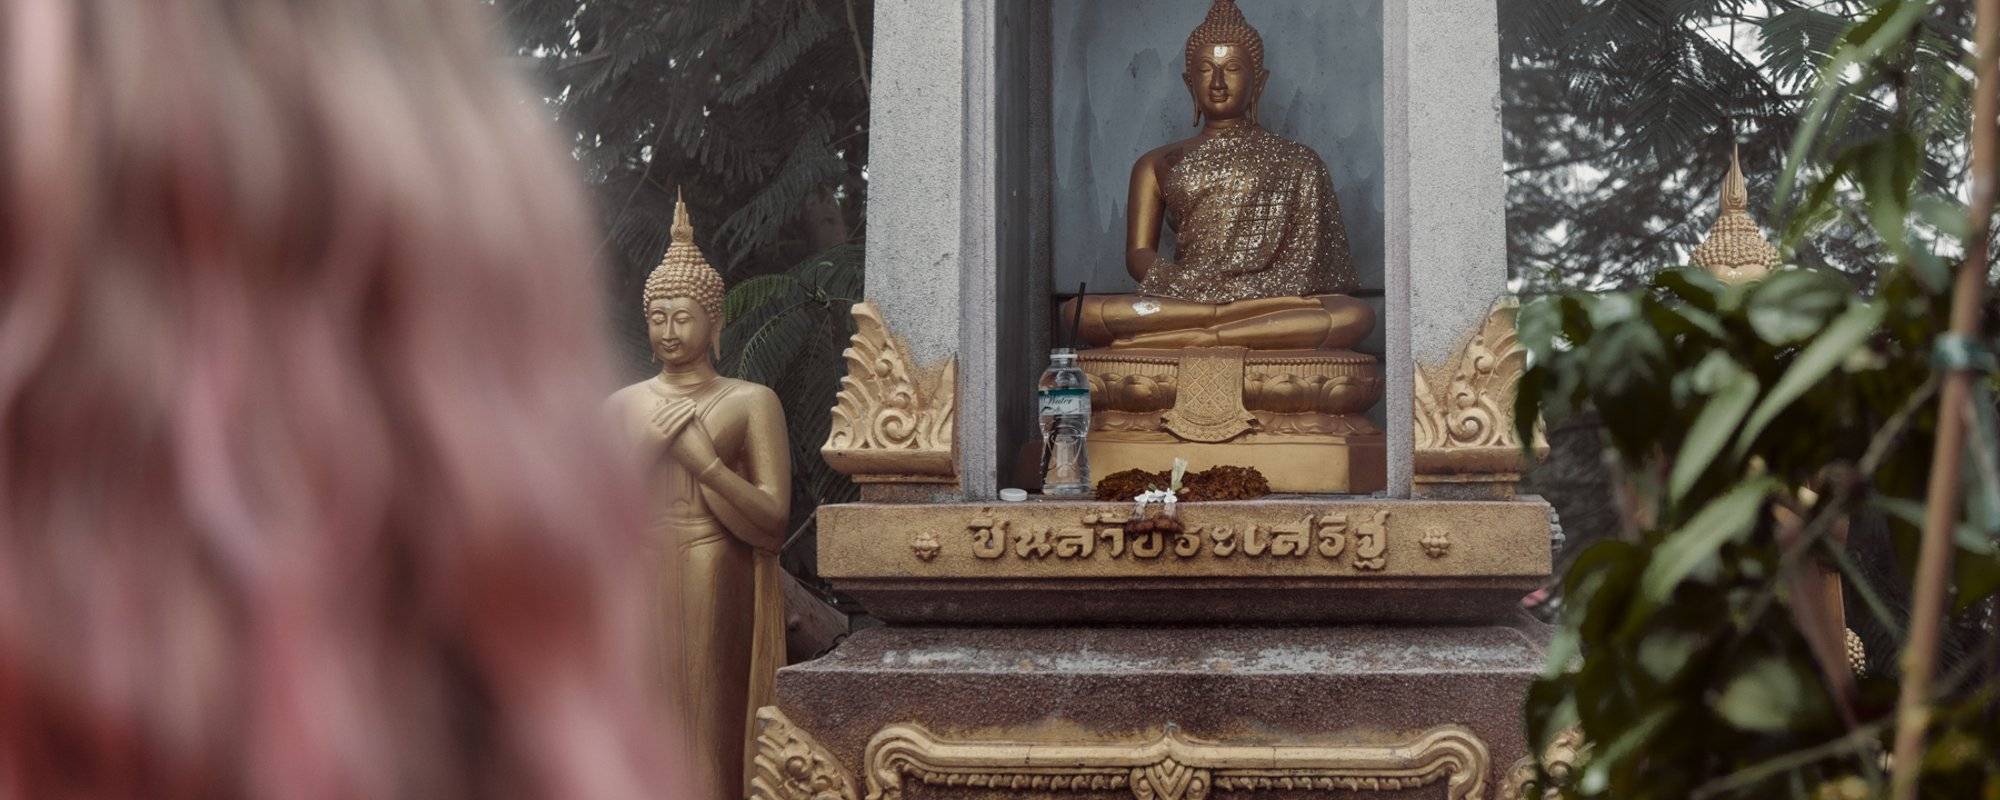 Wat Saket - Temple of the Golden Mount (lots of pictures)